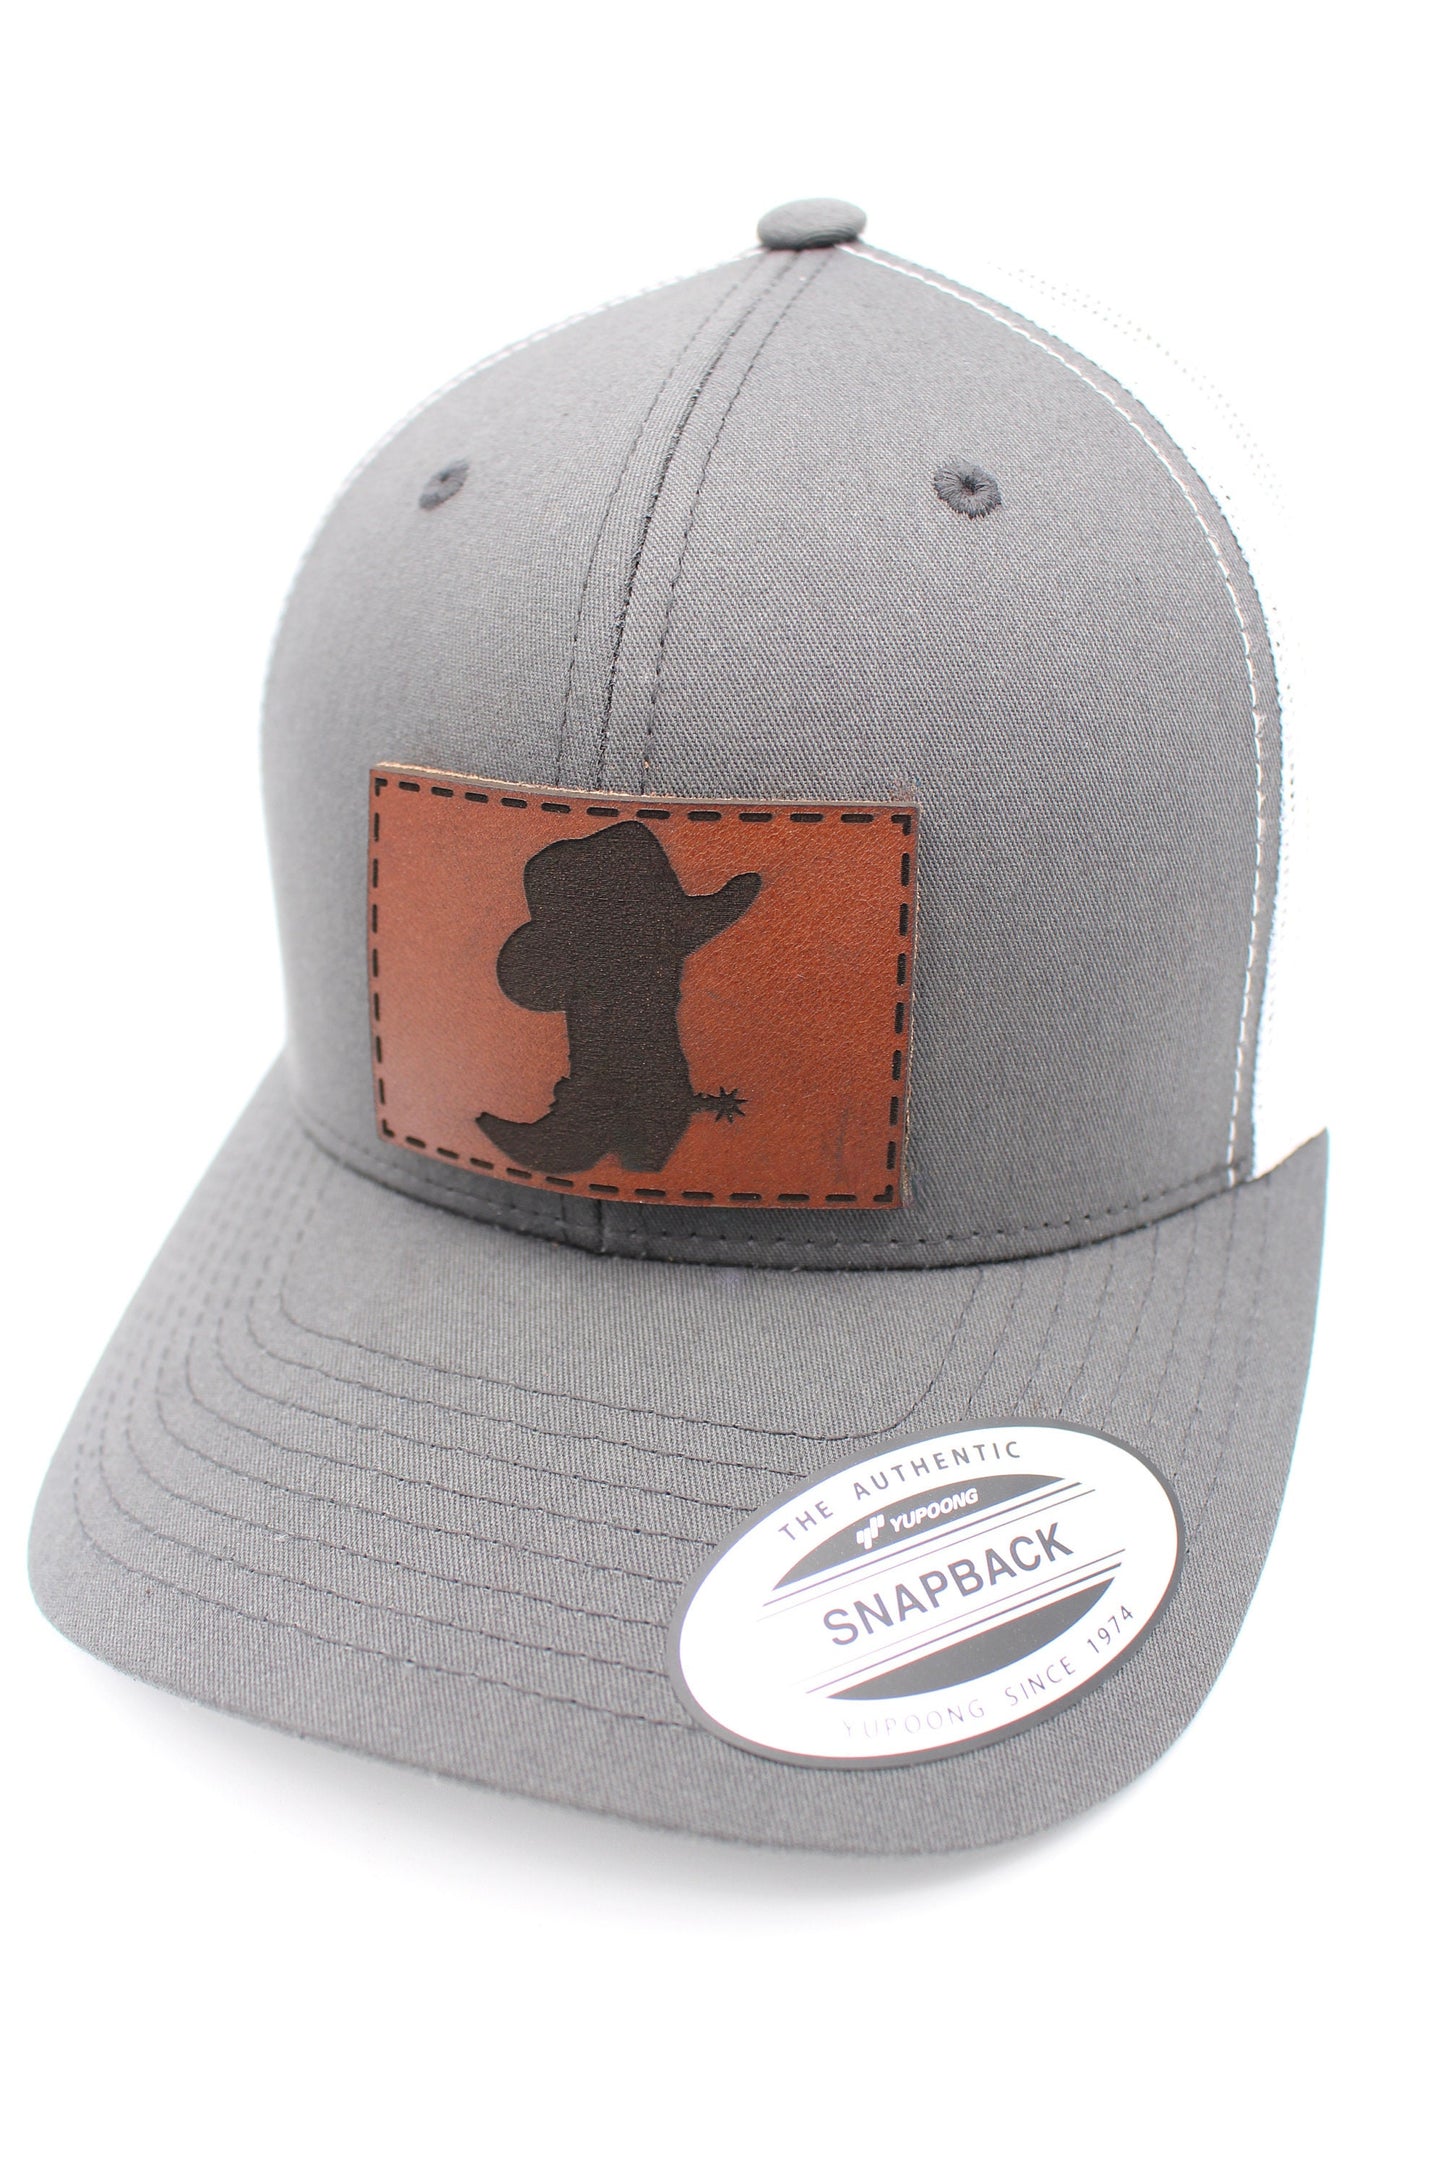 Cowboy Boots & Hat Trucker Hat | Cowboy Trucker Hat | USA Western Trucker Hat